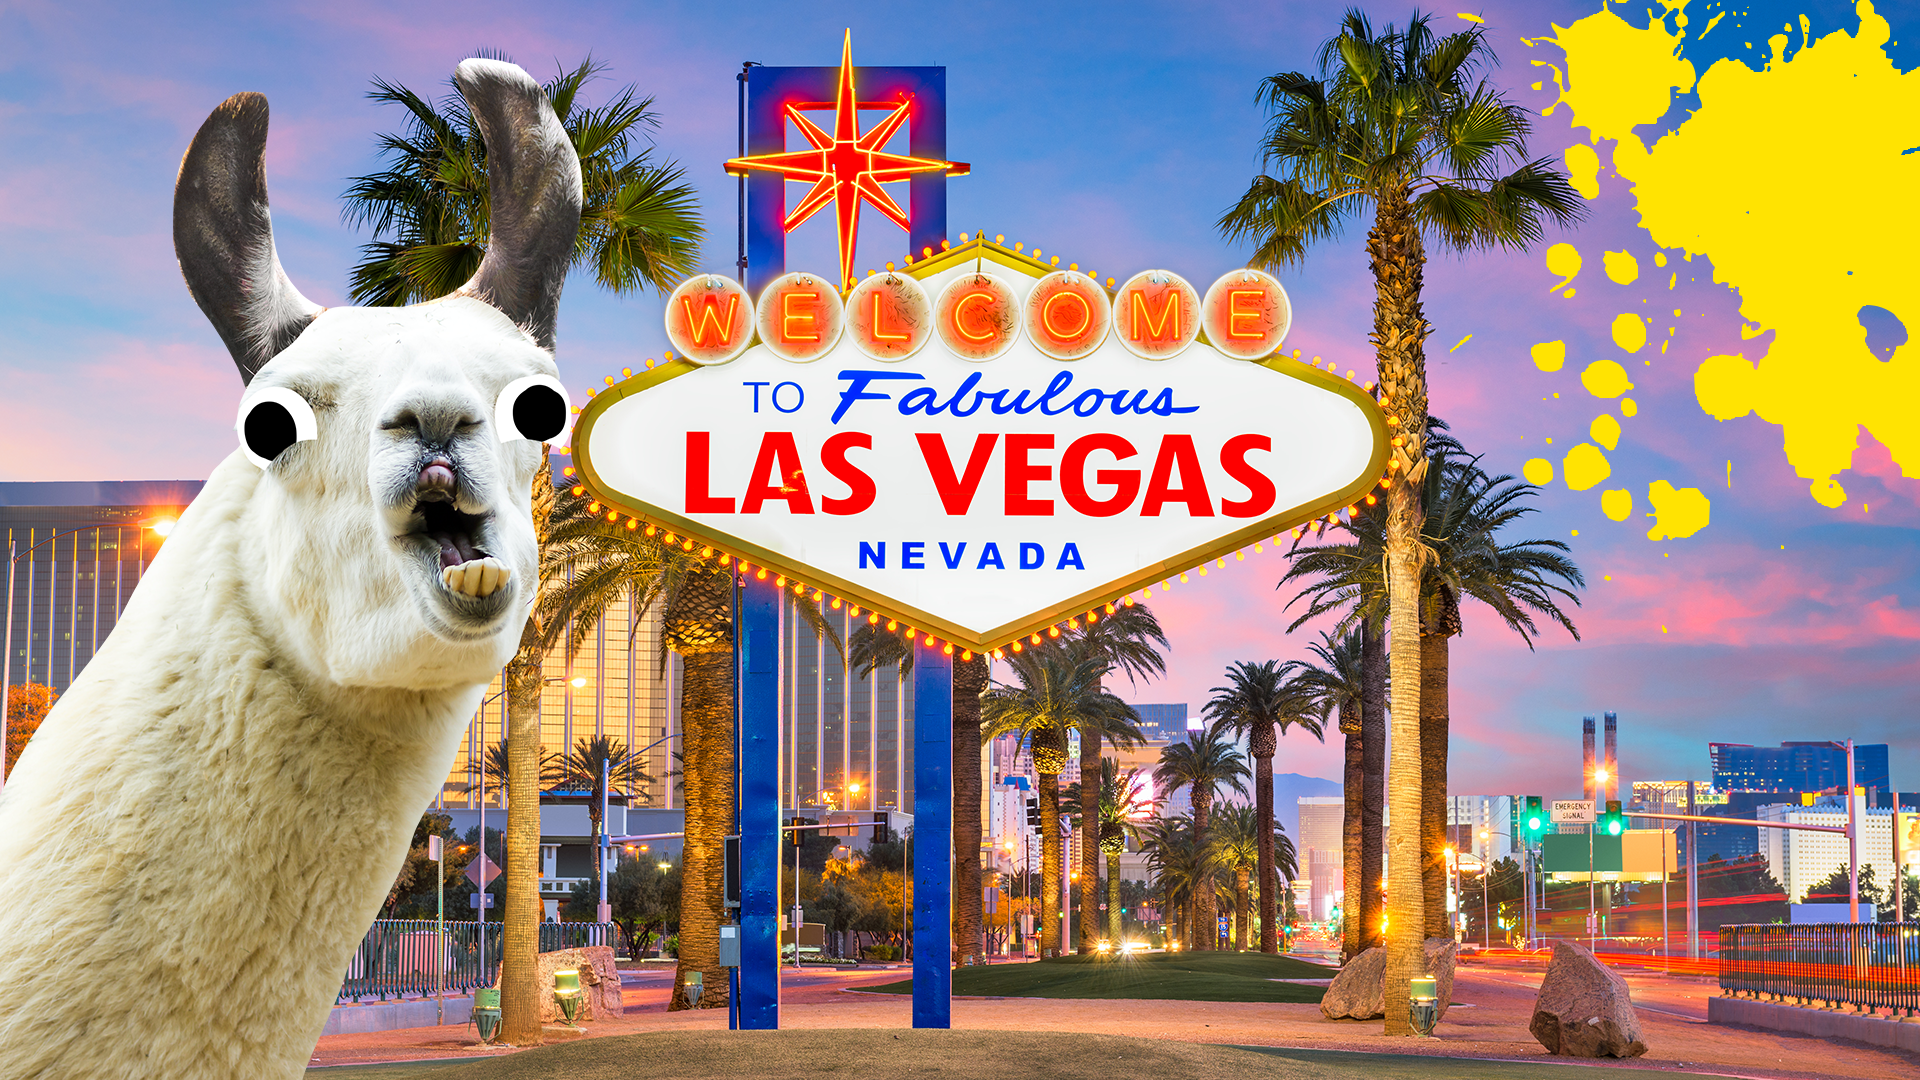 Llama in Vegas